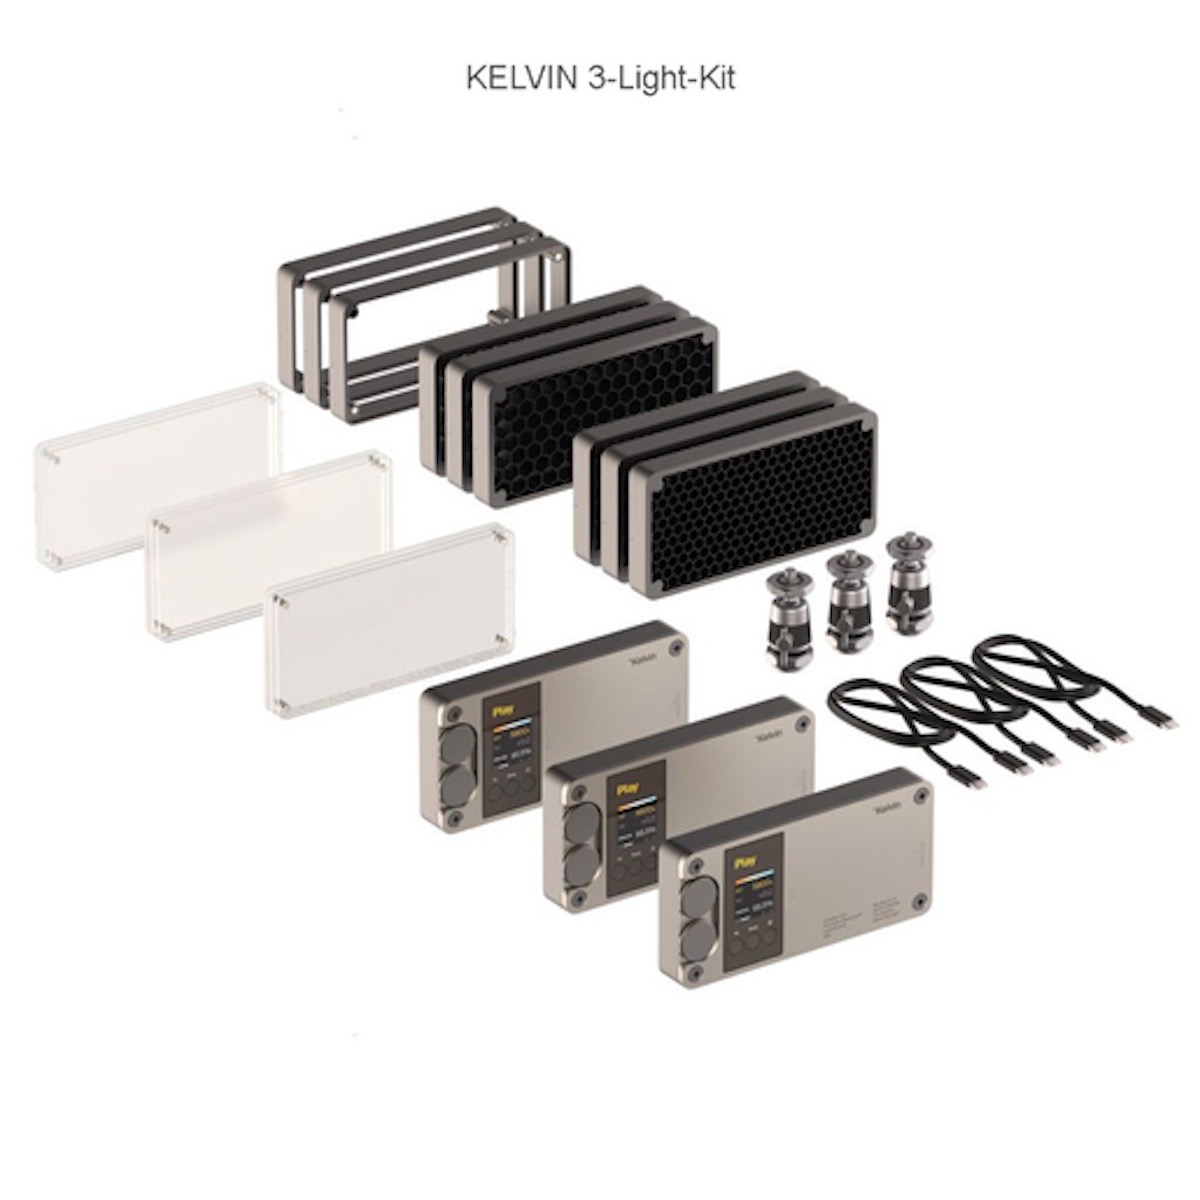 Kelvin PLAY 3-Light Kit RGBACL LED Leuchte